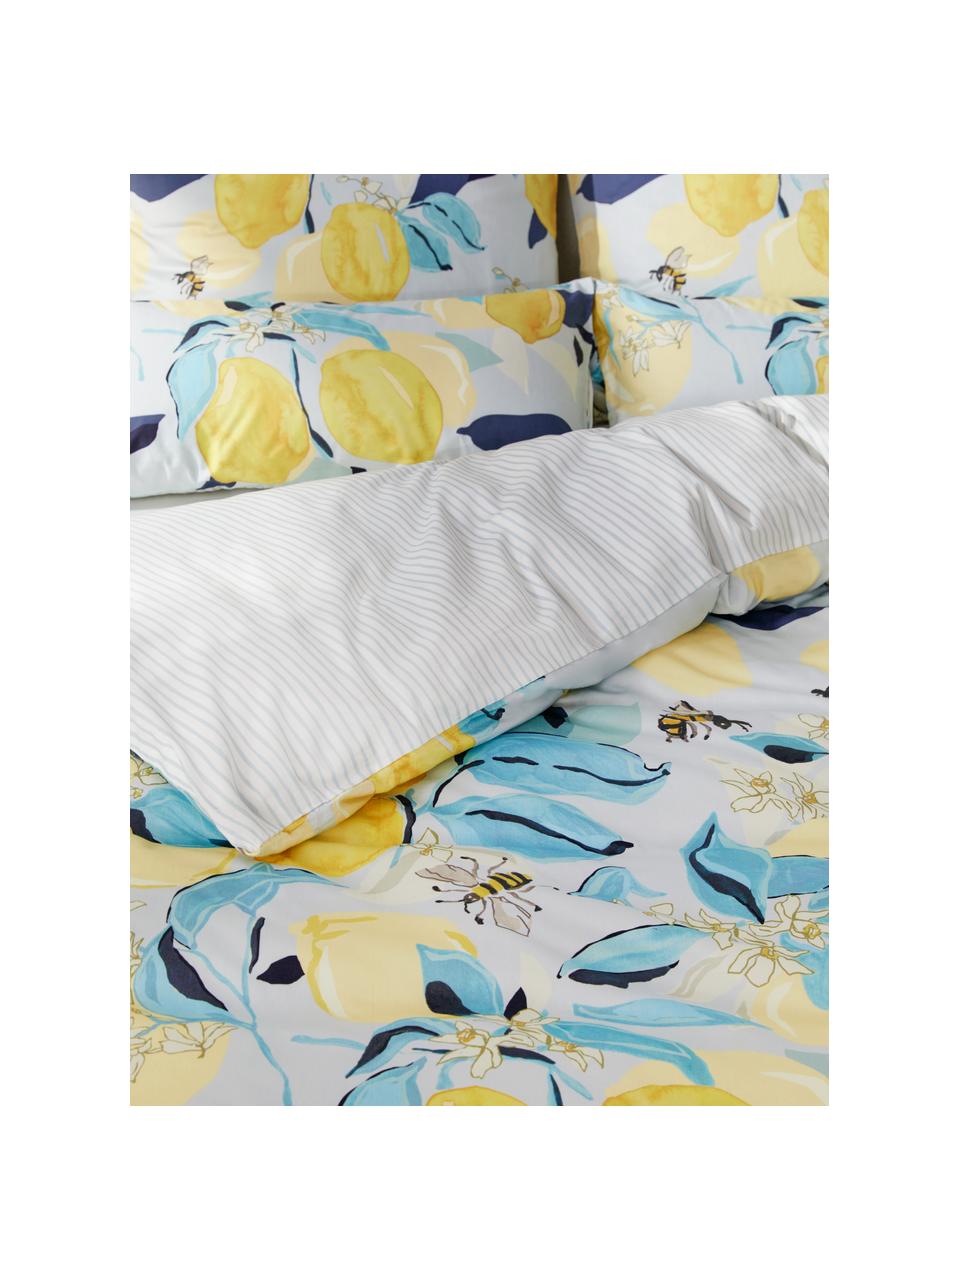 Dwustronna pościel z satyny bawełnianej Garda, Biały, żółty, niebieski, 135 x 200 cm + 1 poduszka 80 x 80 cm